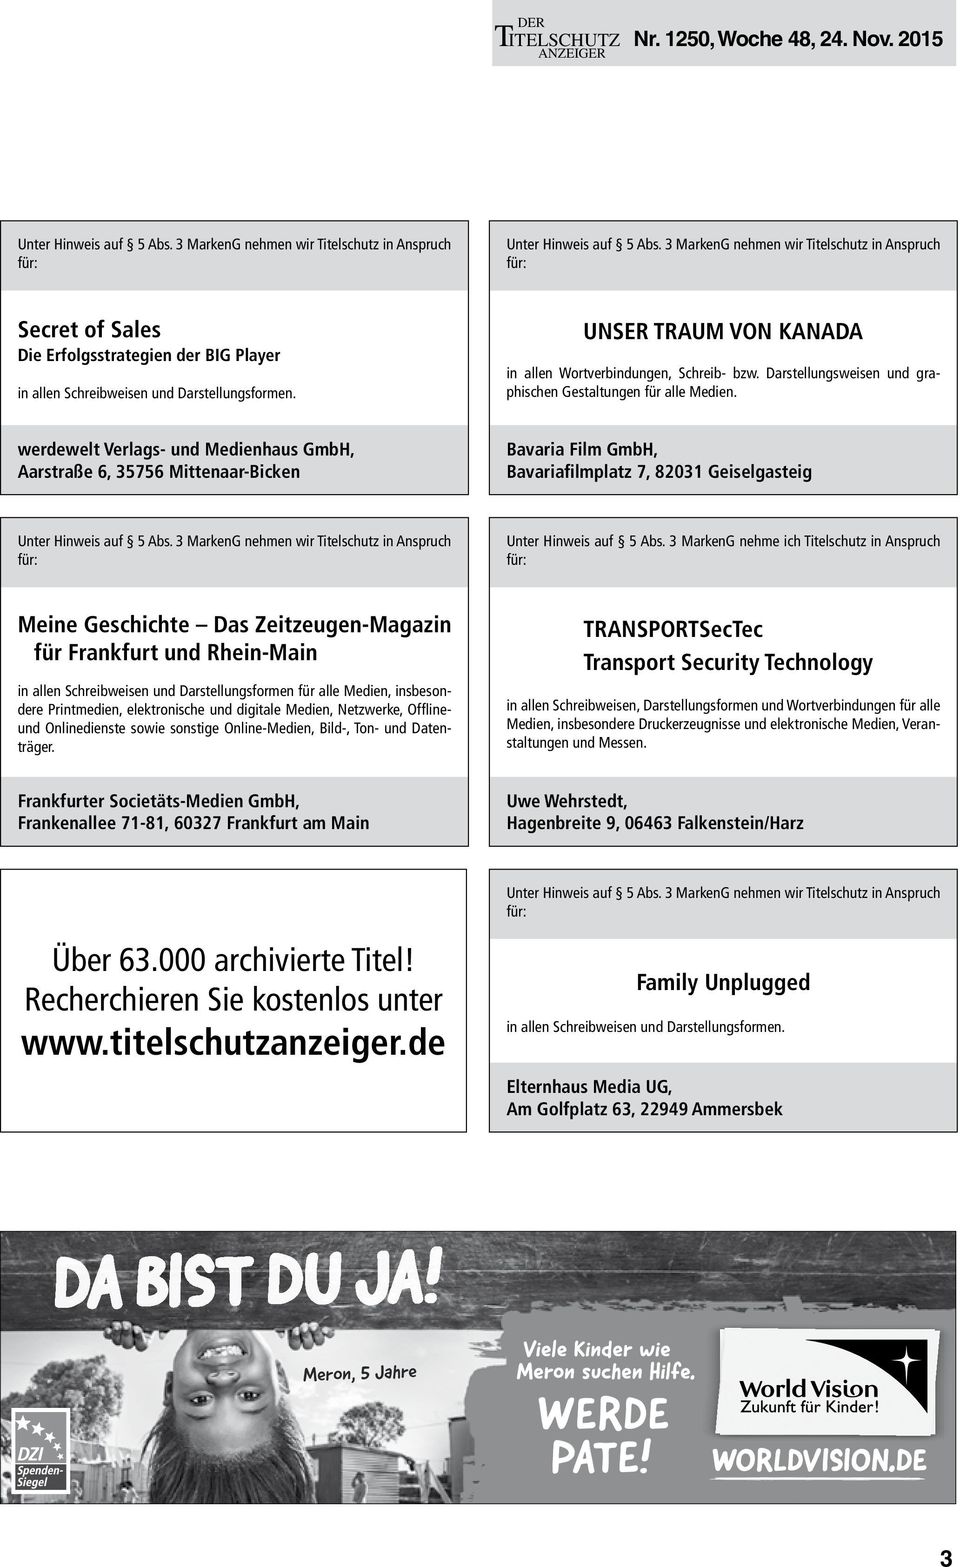 3 MarkenG nehme ich Titelschutz in Anspruch Meine Geschichte Das Zeitzeugen-Magazin für Frankfurt und Rhein-Main in allen Schreibweisen und Darstellungsformen für alle Medien, insbesondere